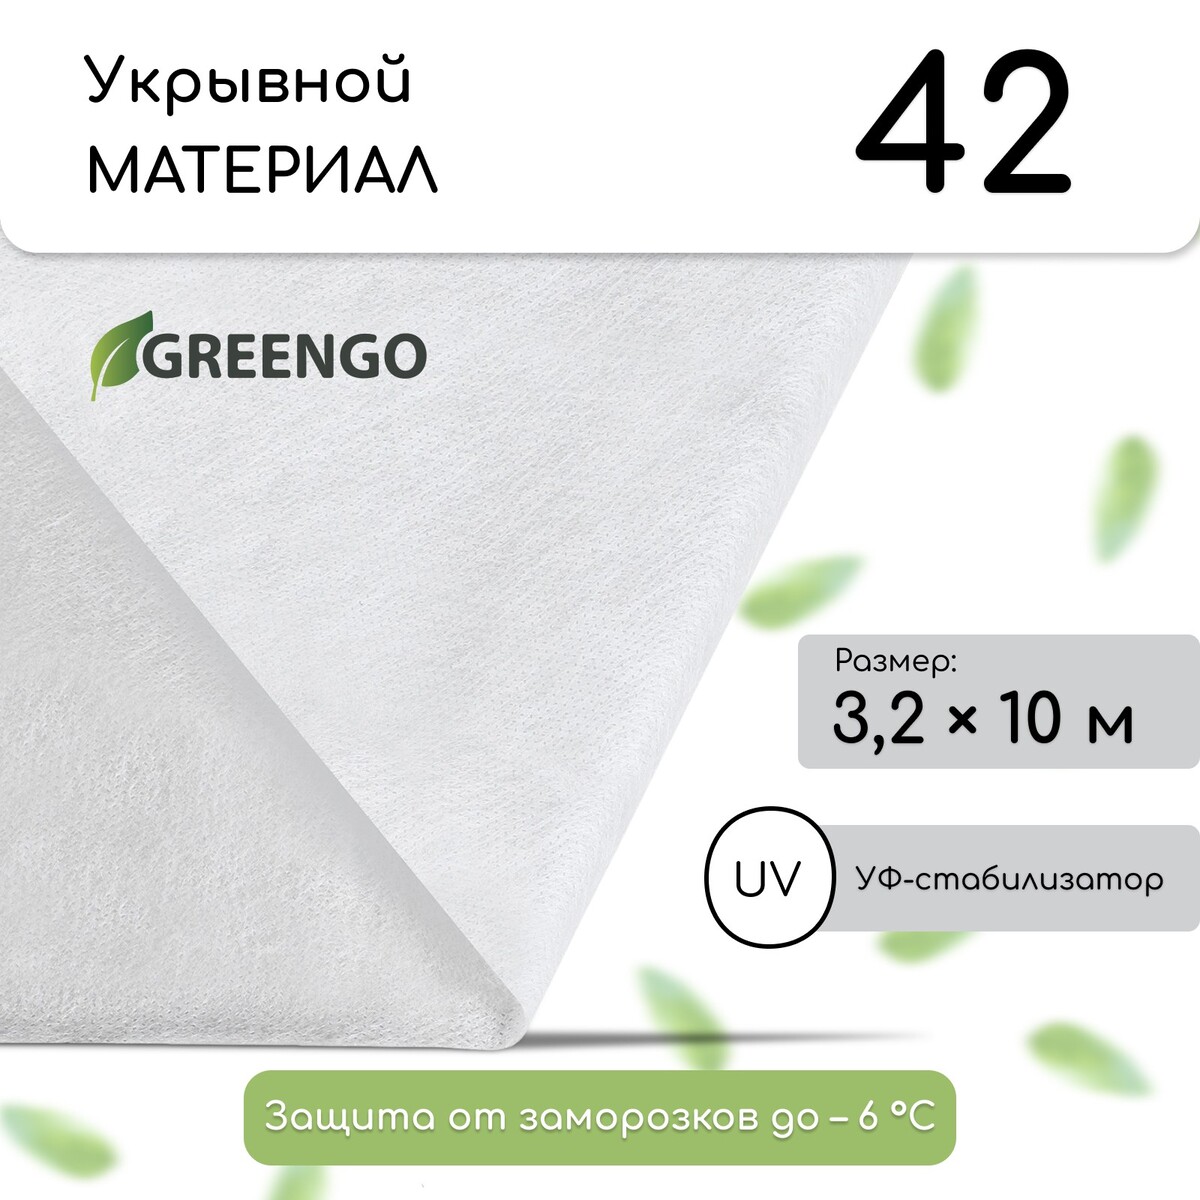 Материал укрывной, 10 × 3,2 м, плотность 42 г/м², спанбонд с уф-стабилизатором, белый, greengo, эконом 20%